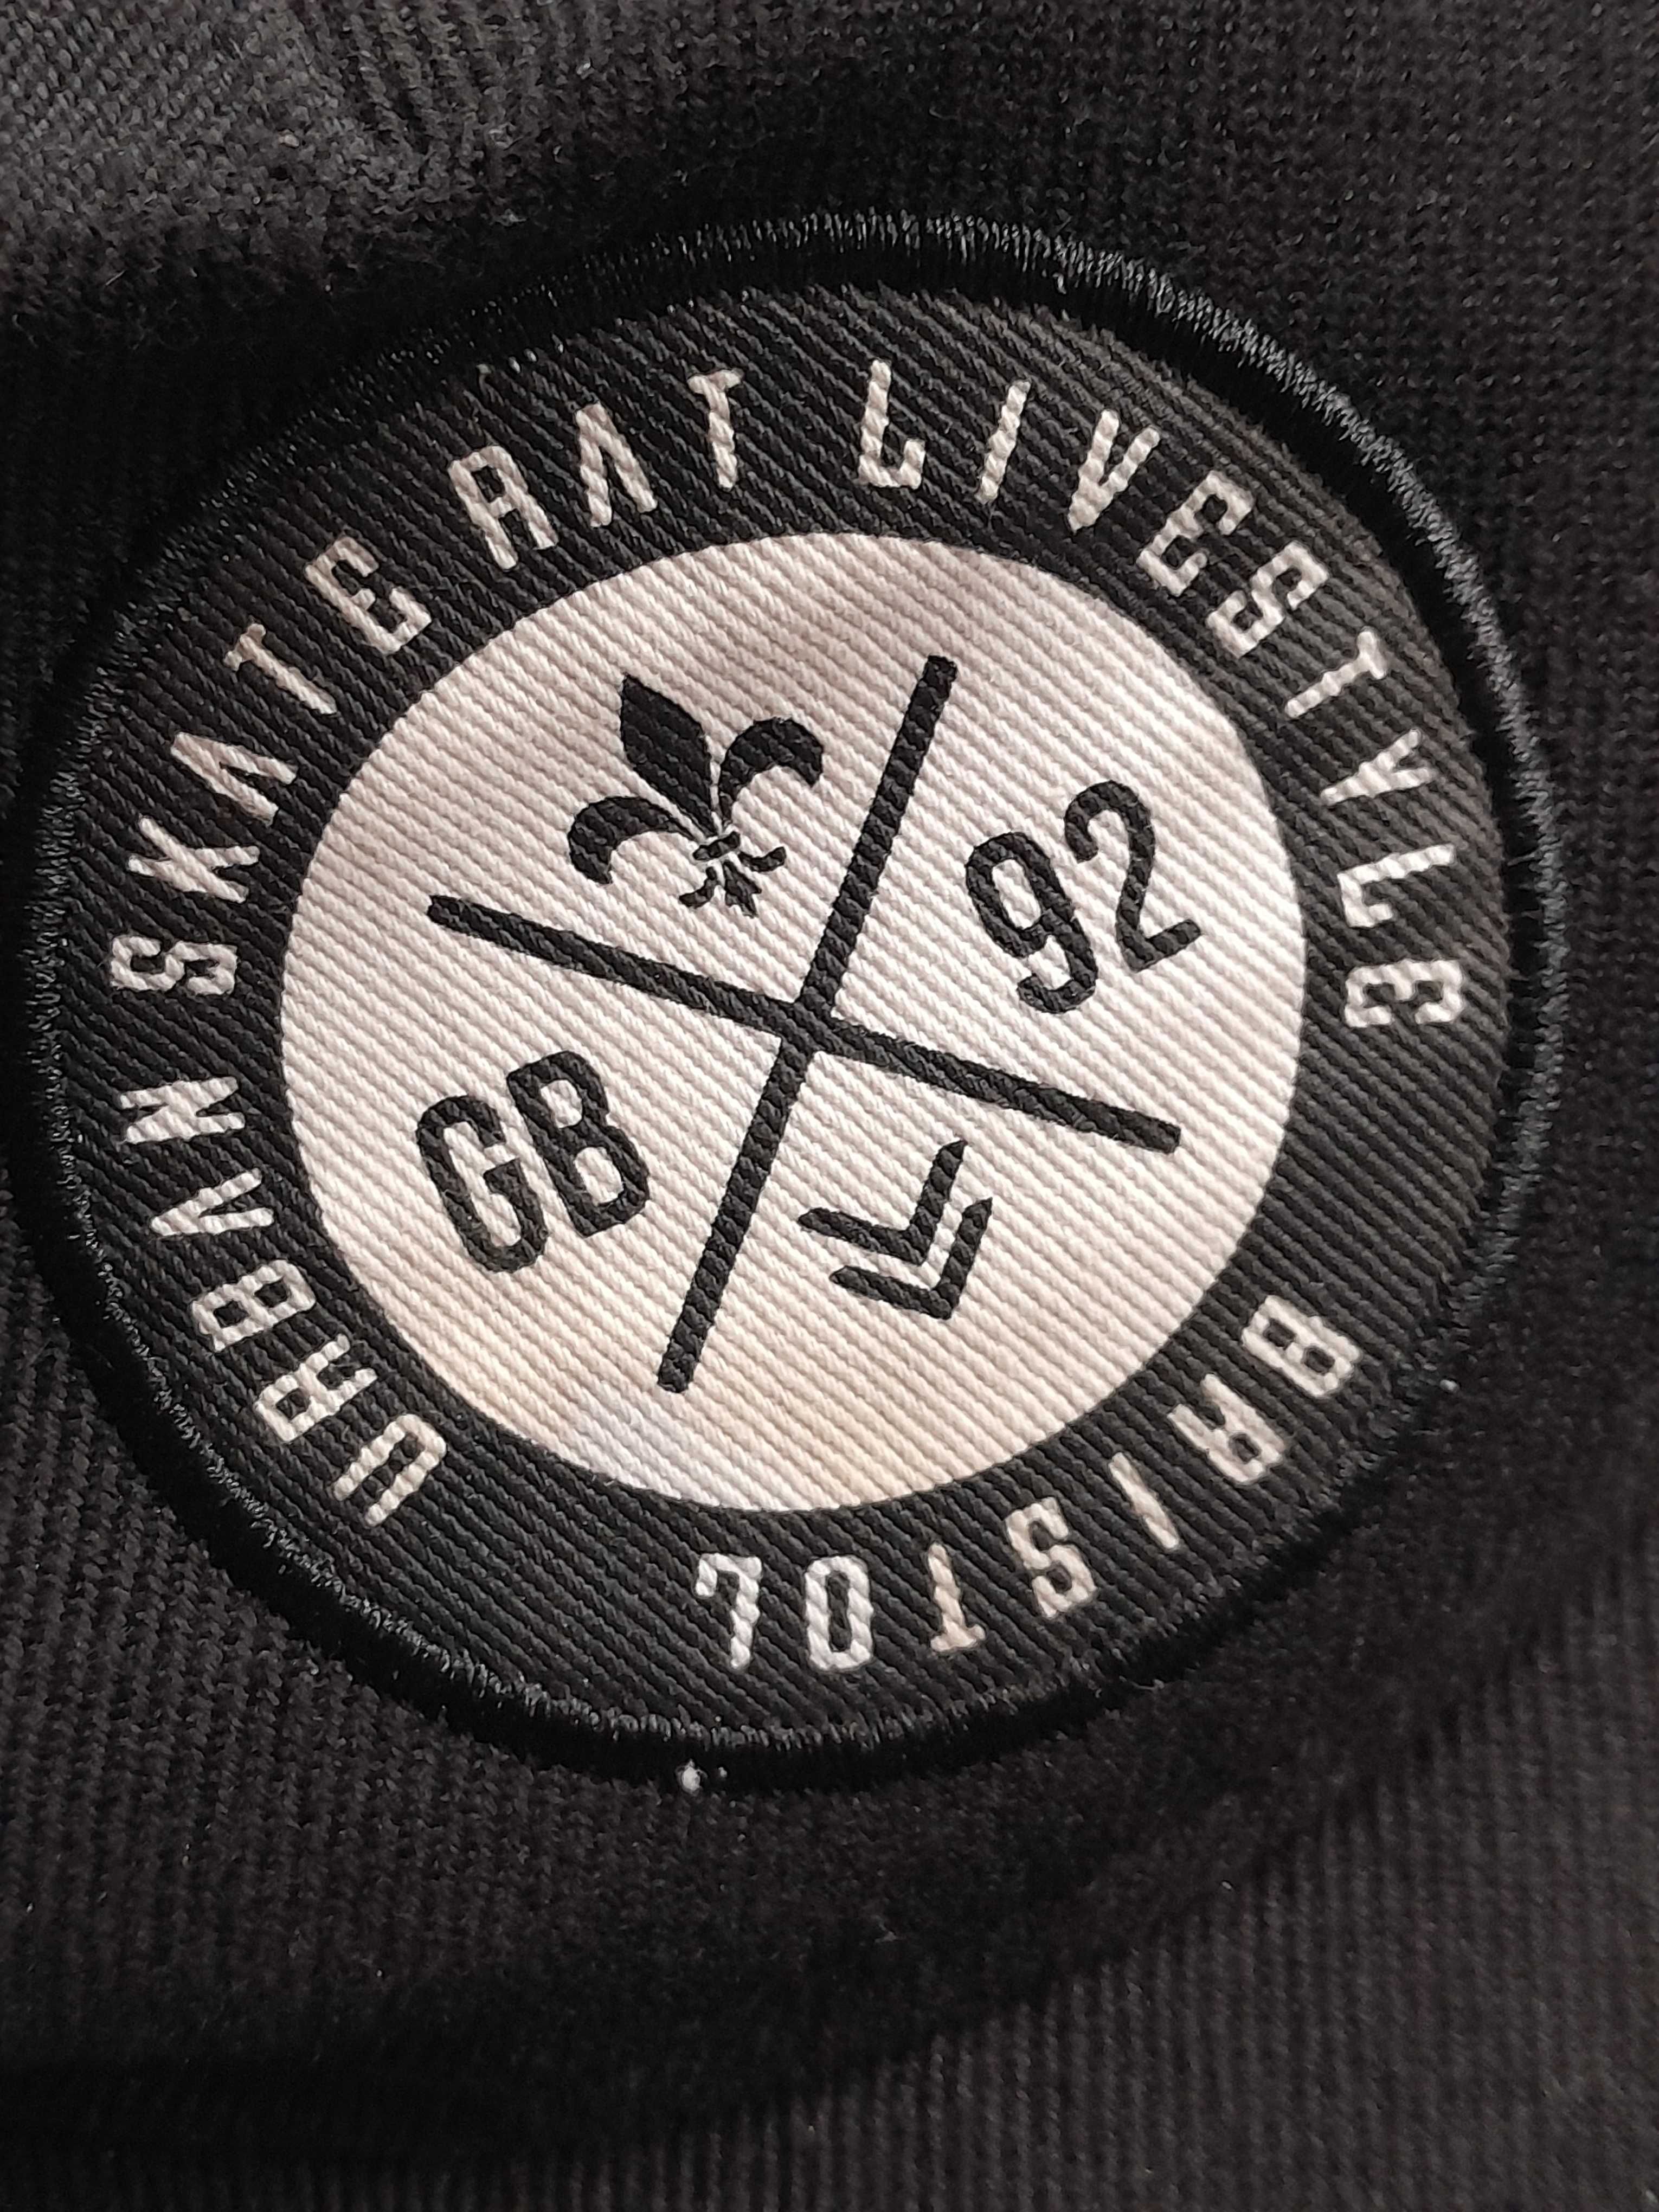 Stara nowa czapka dżokejka GD 92 Bristol Urban Skate livestyle